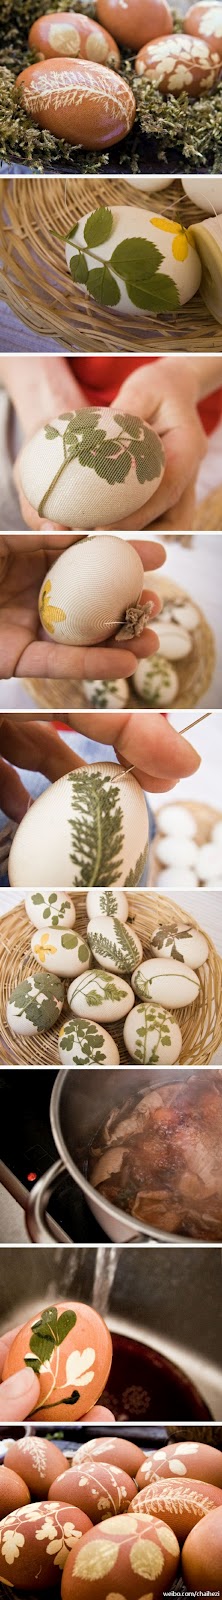 farbanje jaja sa lišćem